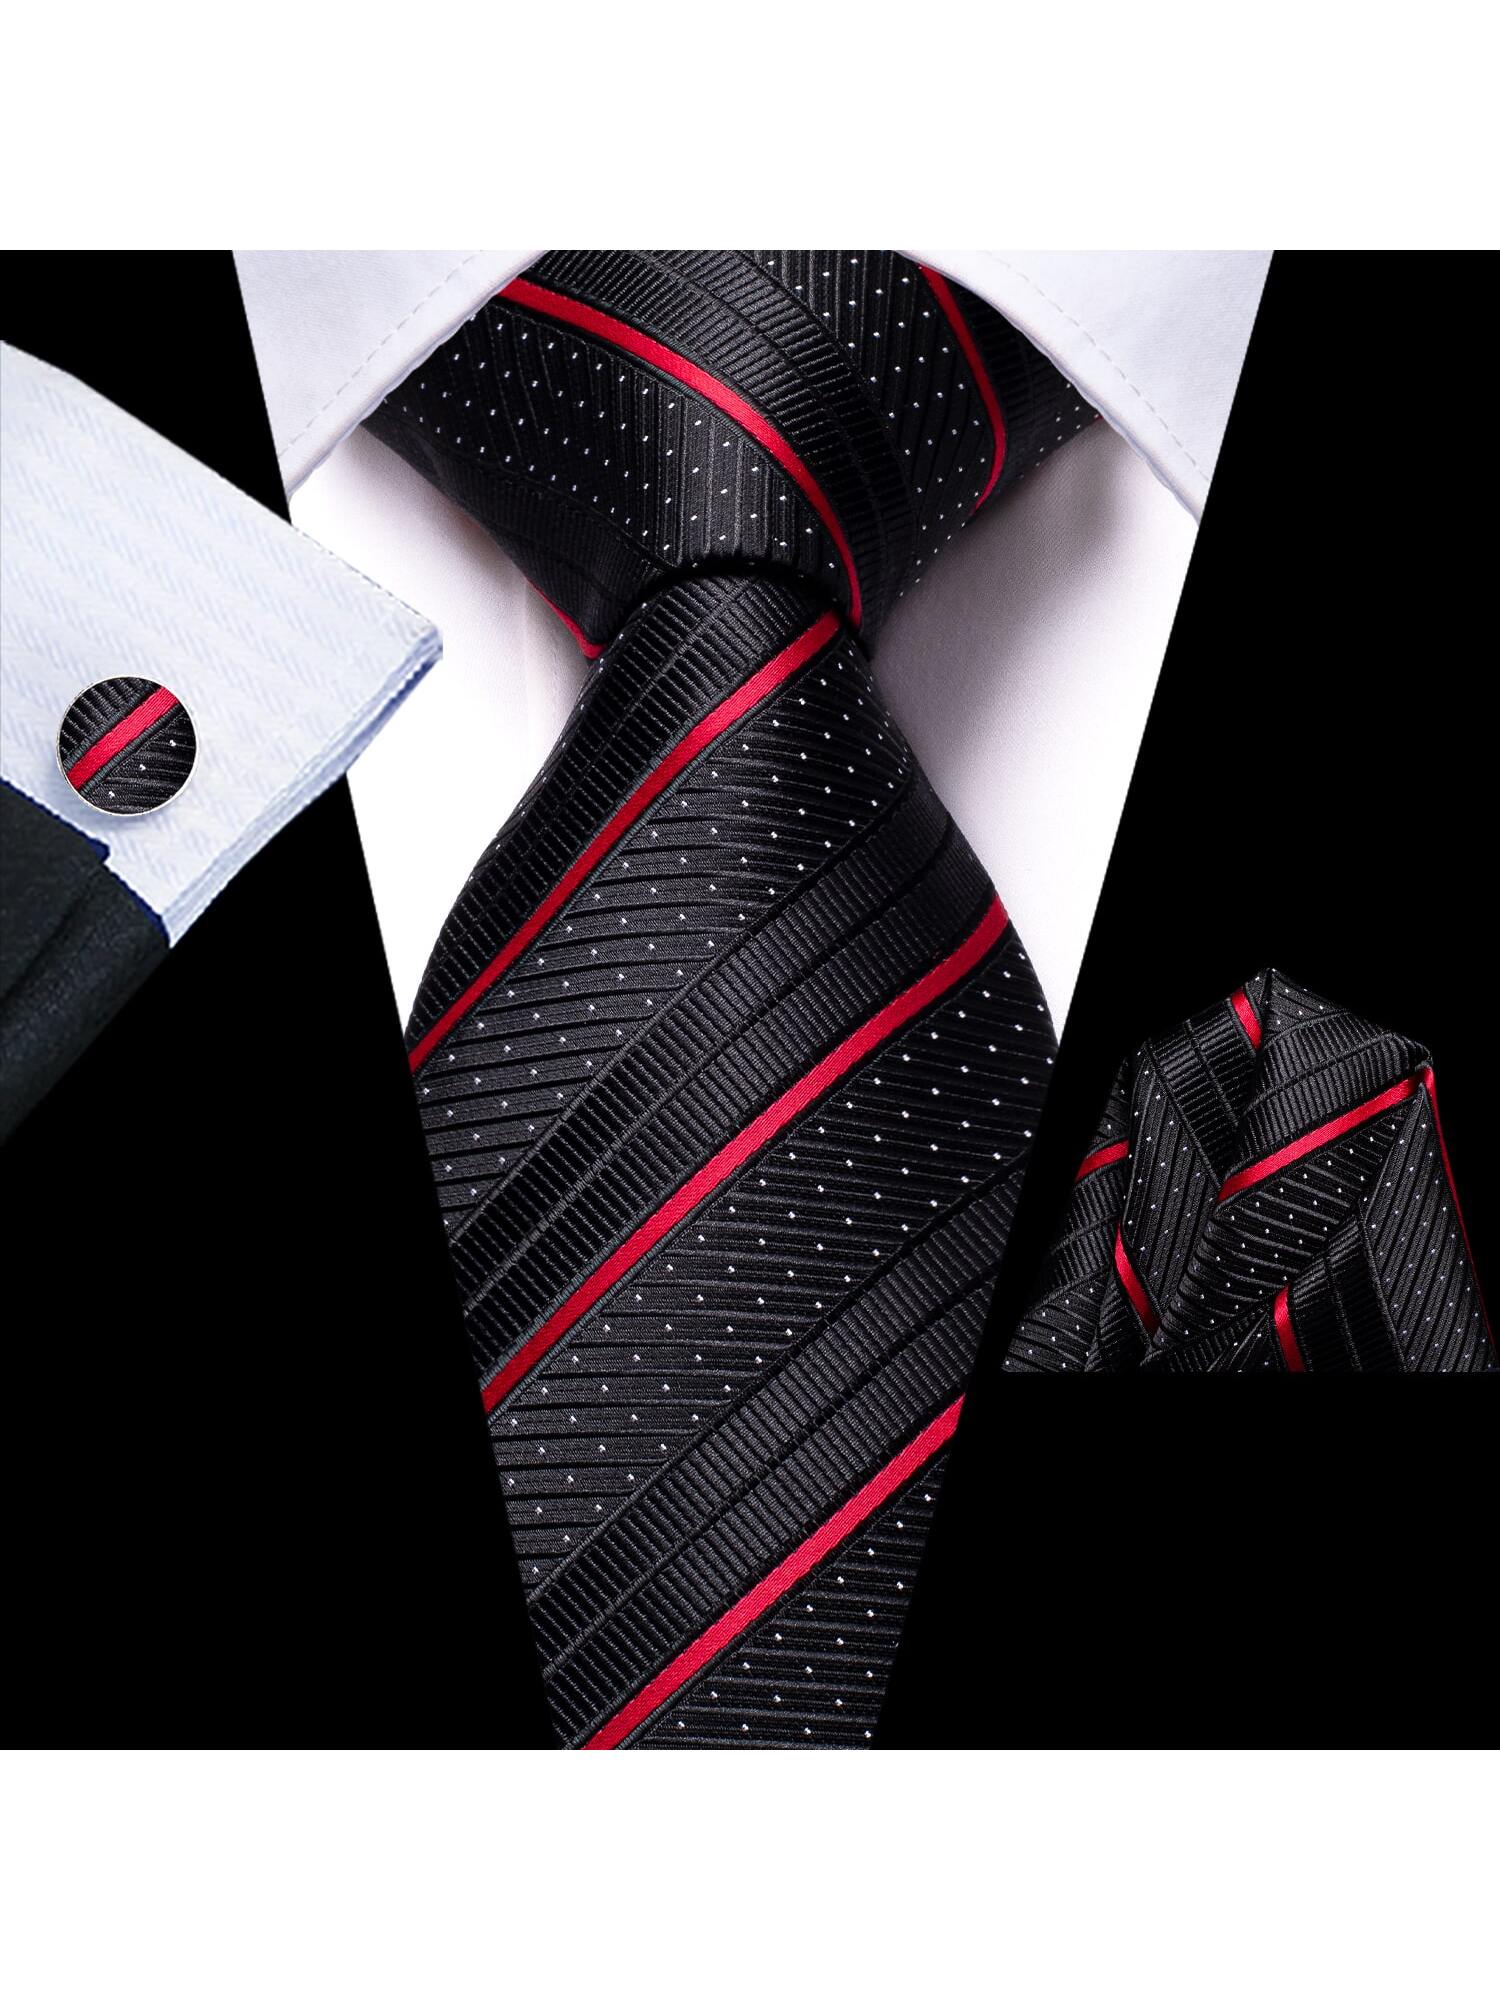 Шелковый мужской галстук Hi-Tie, черный привет галстук черный белый цветочный шелковый мужской жилет галстук набор жаккардовый плоский воротник жилет без рукавов куртка галстук